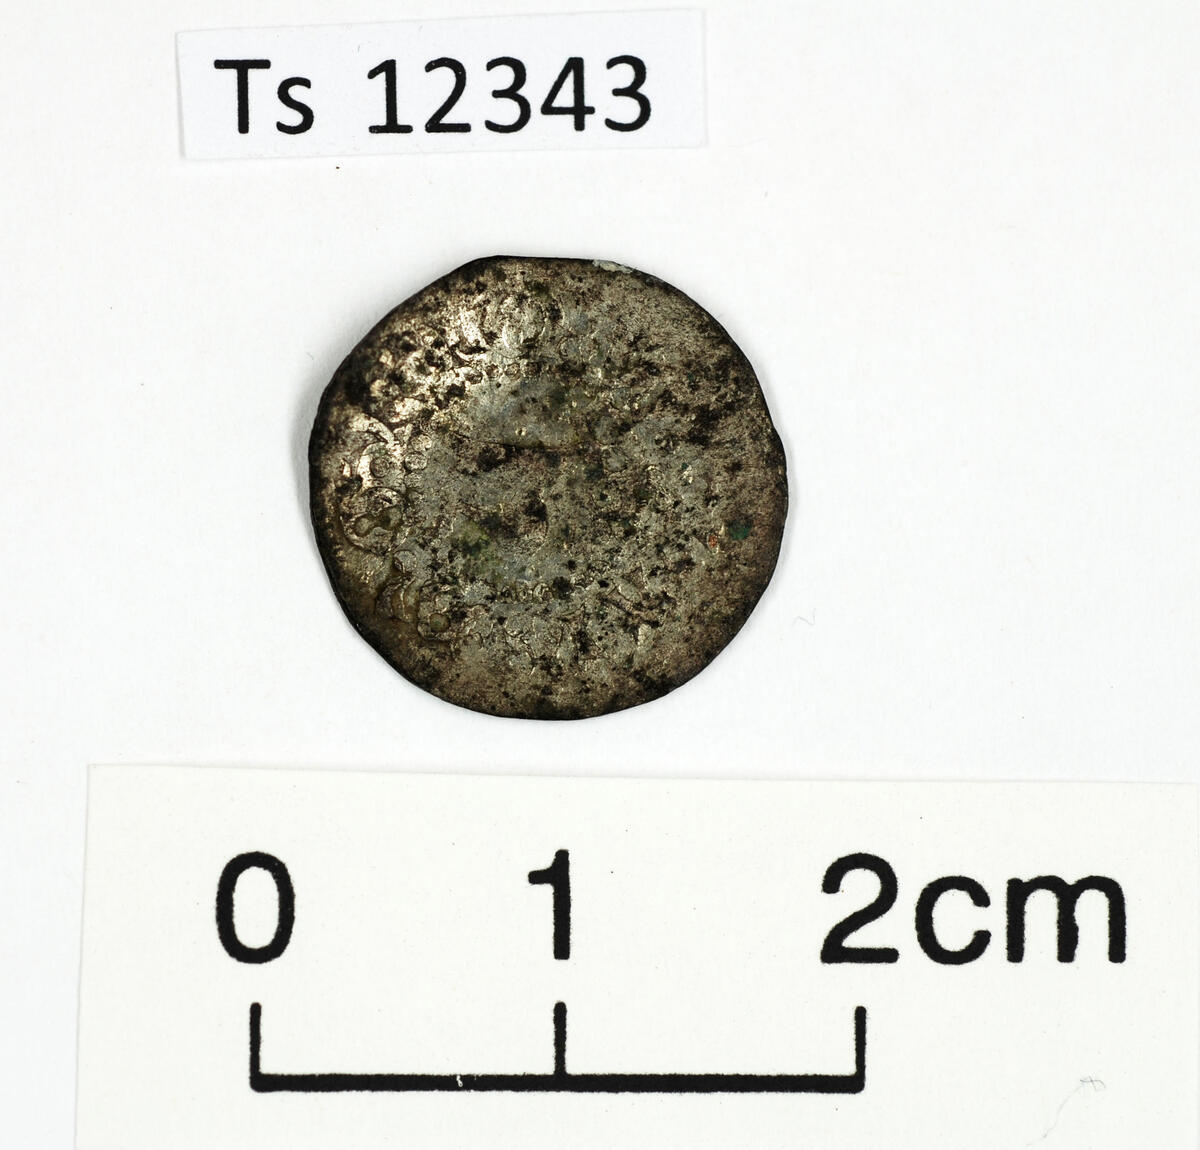 Mynt av sølv, 1 stk., av type Hvid. Mulig slått i Nidaros under King Hans 1483-1513. 1,5 cm i diameter. 0,7 gram. 